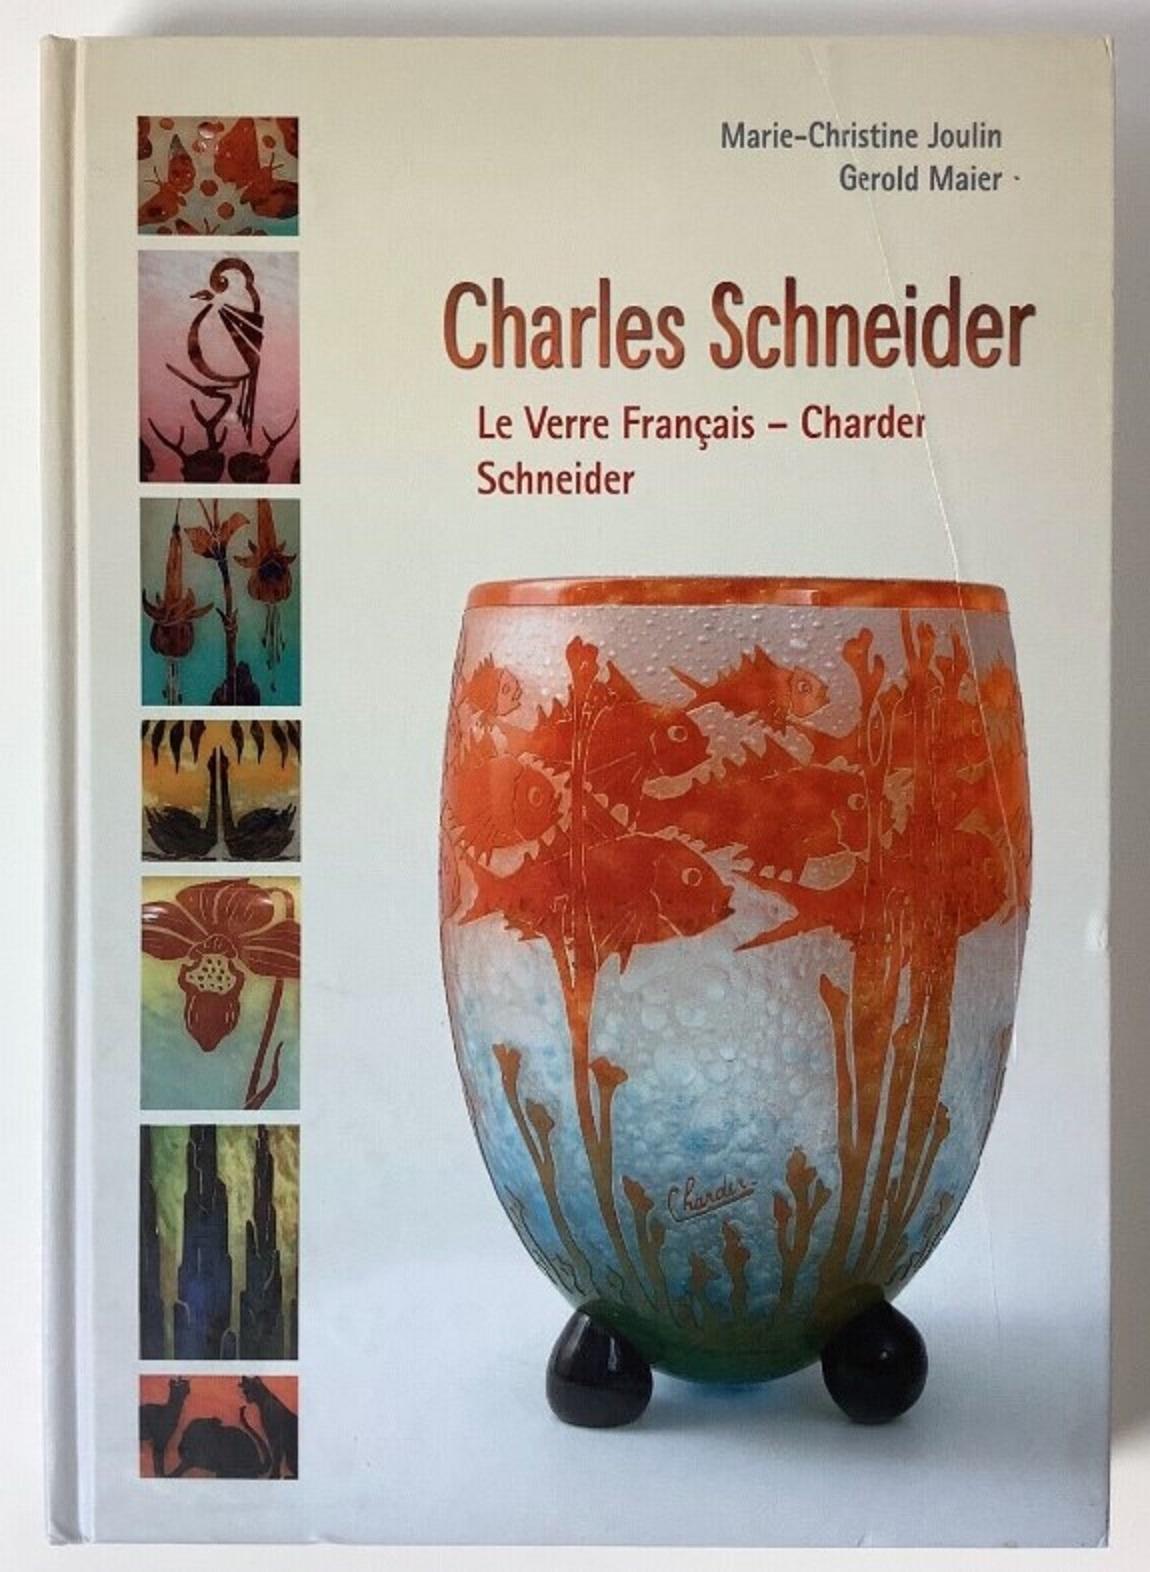 Vasenschild: Schneider
Schneider
Charles Schneider (1881-1953) studierte Kunst an zwei der renommiertesten französischen Kunsthochschulen. Zunächst an der Hochschule für Bildende Künste in Nancy, dann an der elitären Ecole des Beaux Arts in Paris.